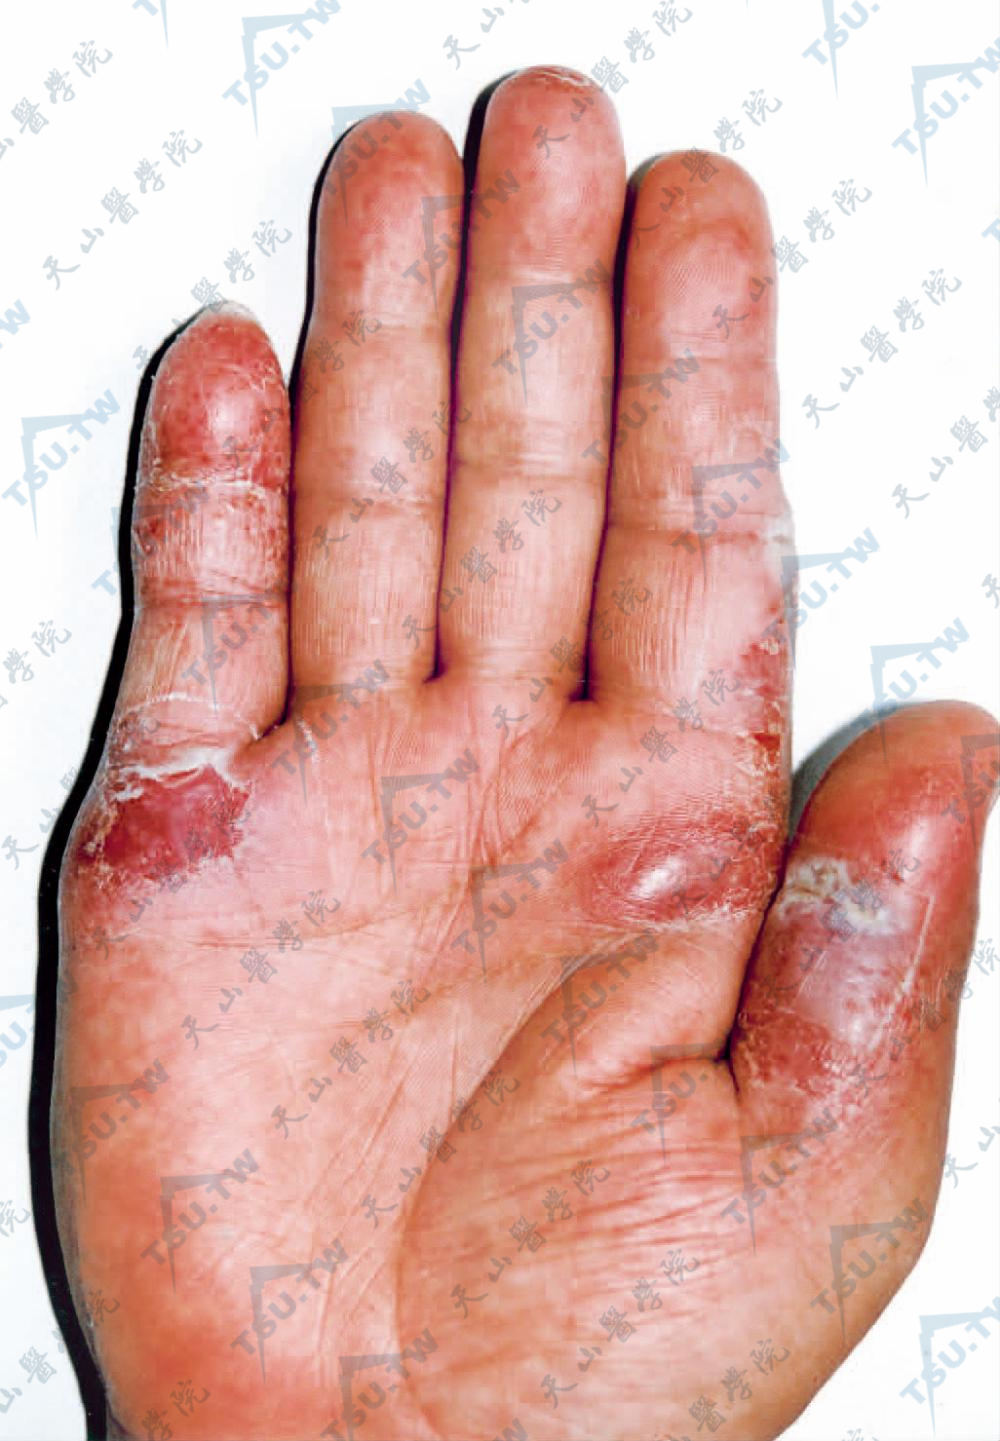 右手掌可见浸润性红斑，部分红斑表面糜烂，结痂